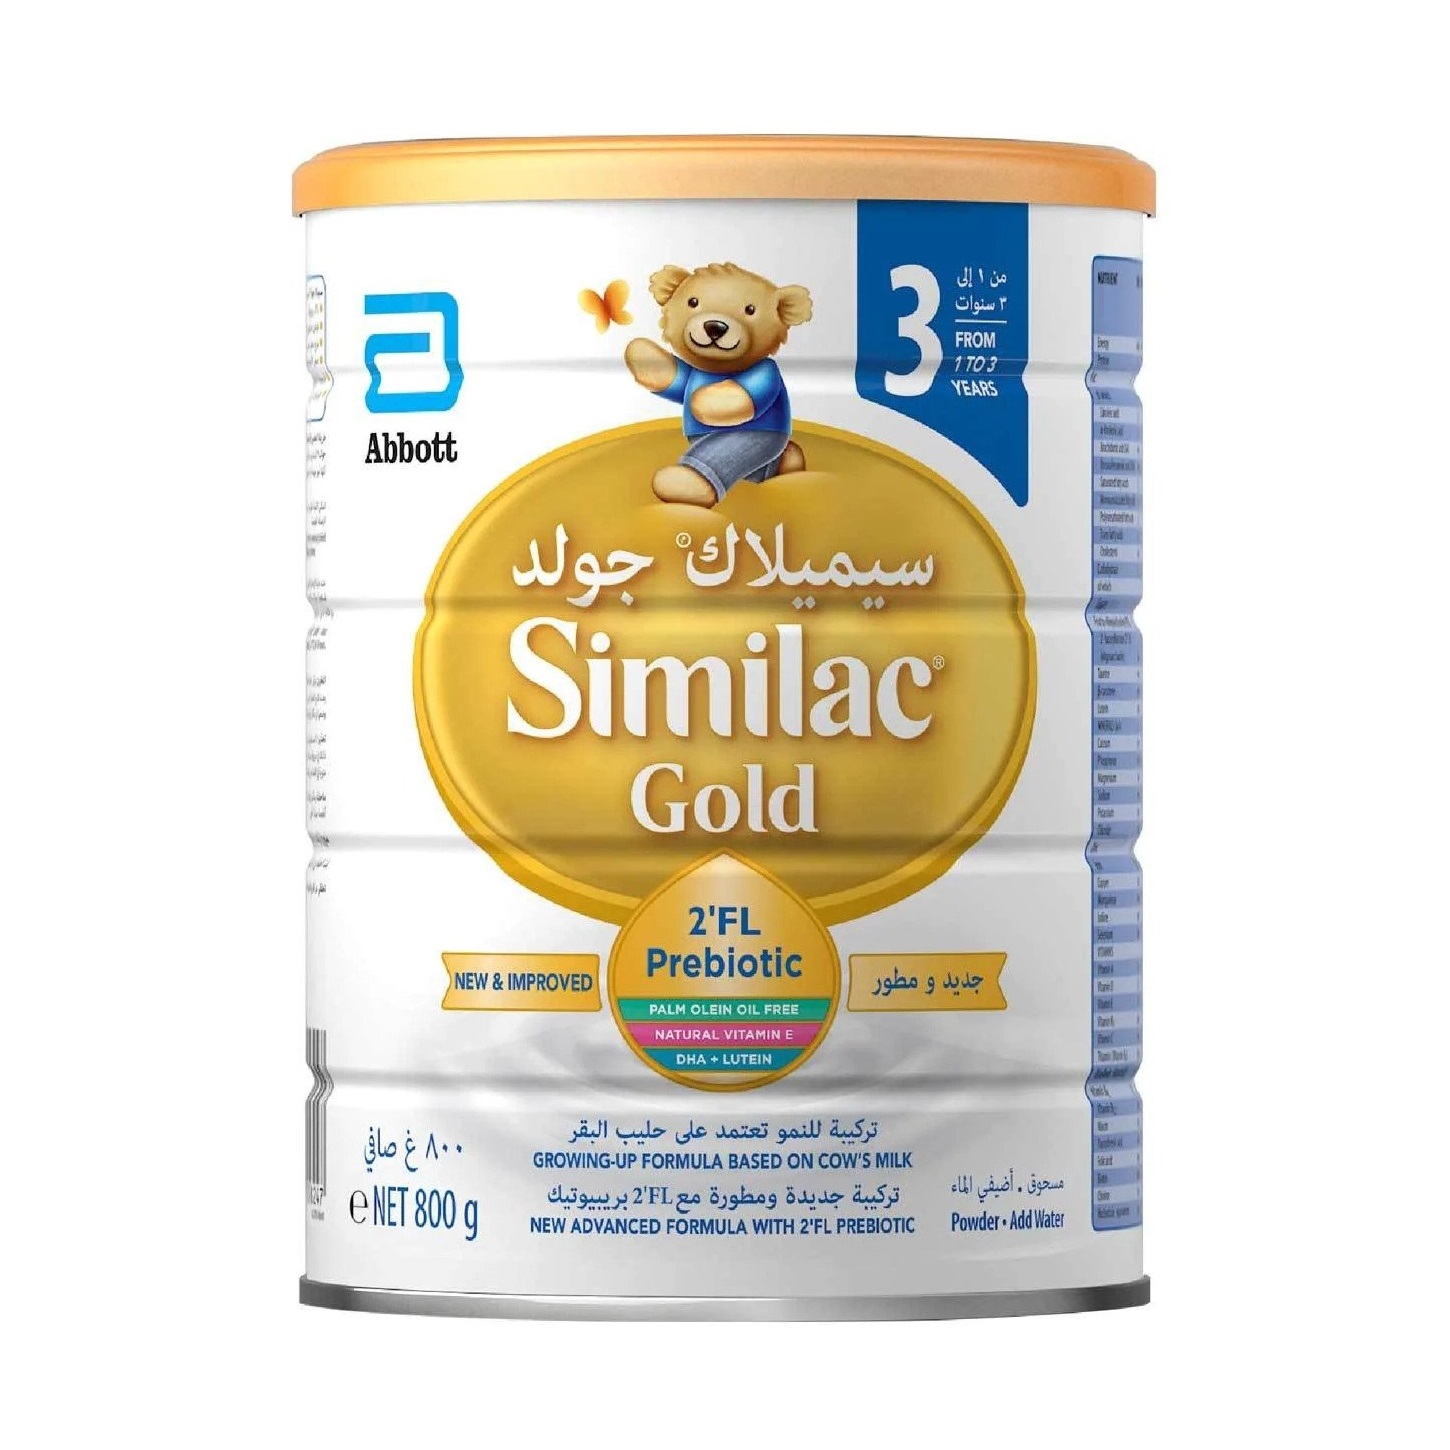 شیر خشک سیمیلاک گلد 3 اصل ایرلندی Similac Gold 3